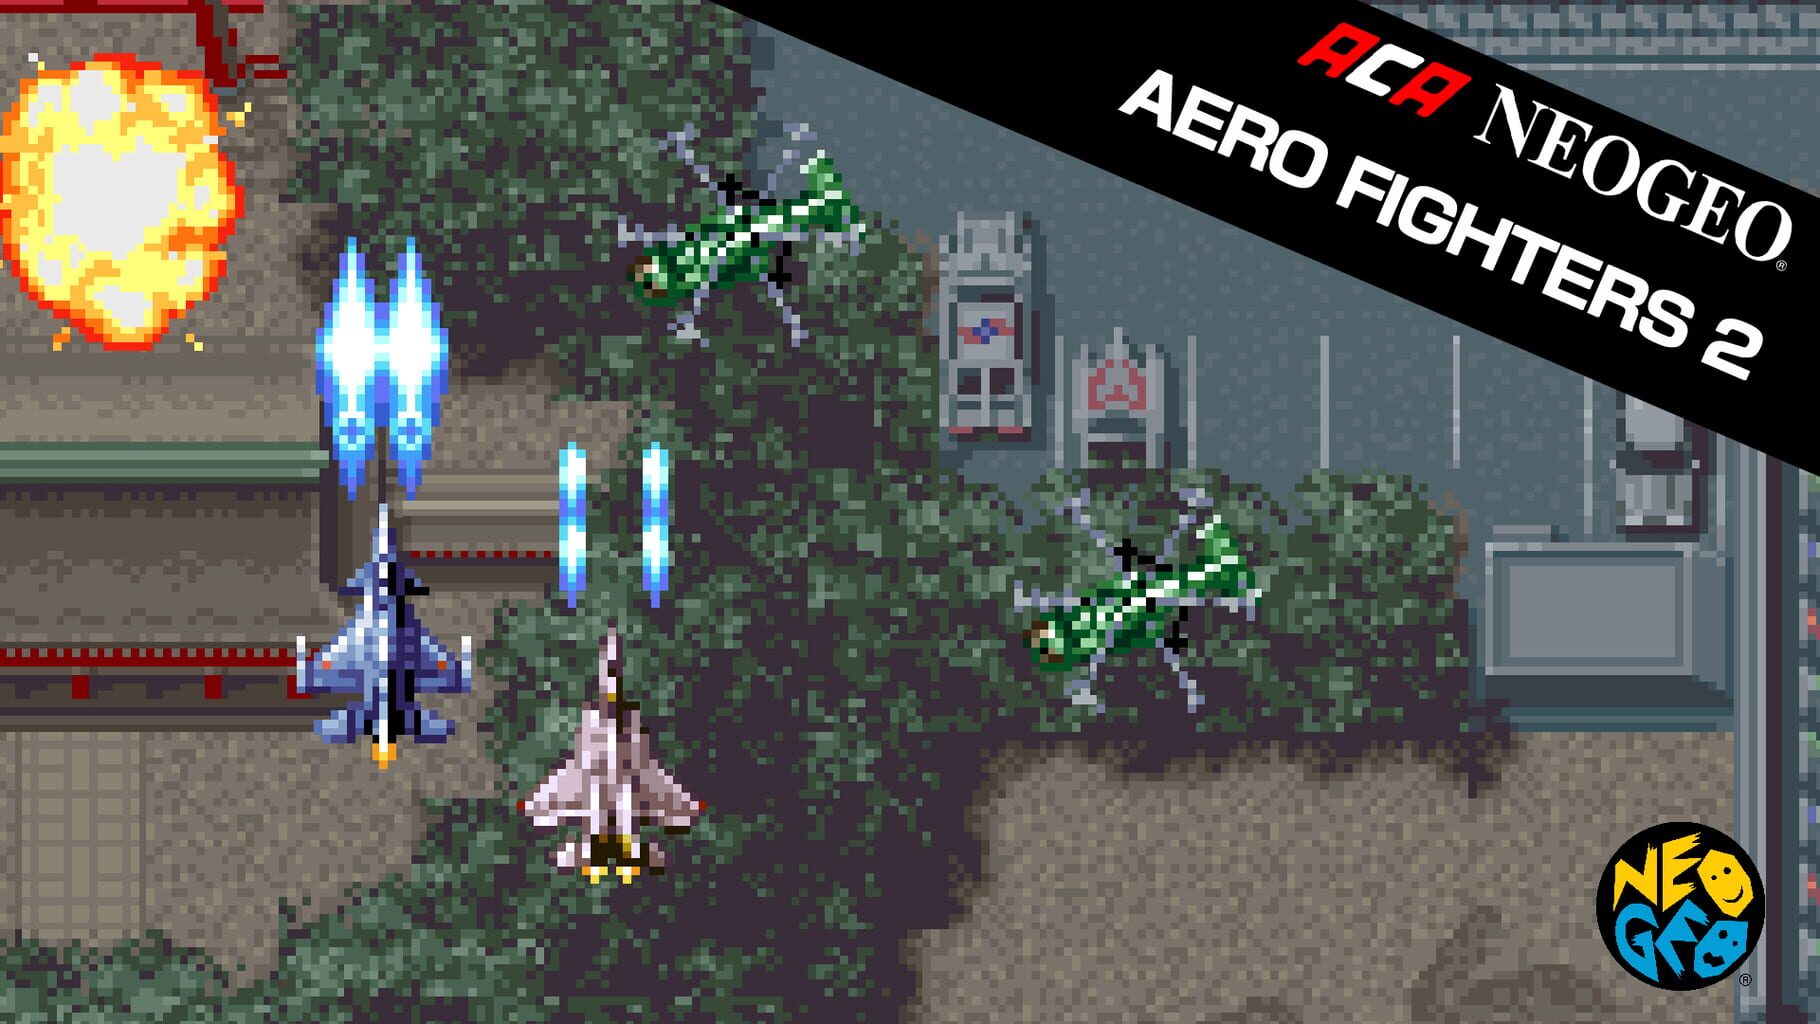 ACA Neogeo Aero Fighters 2 artwork